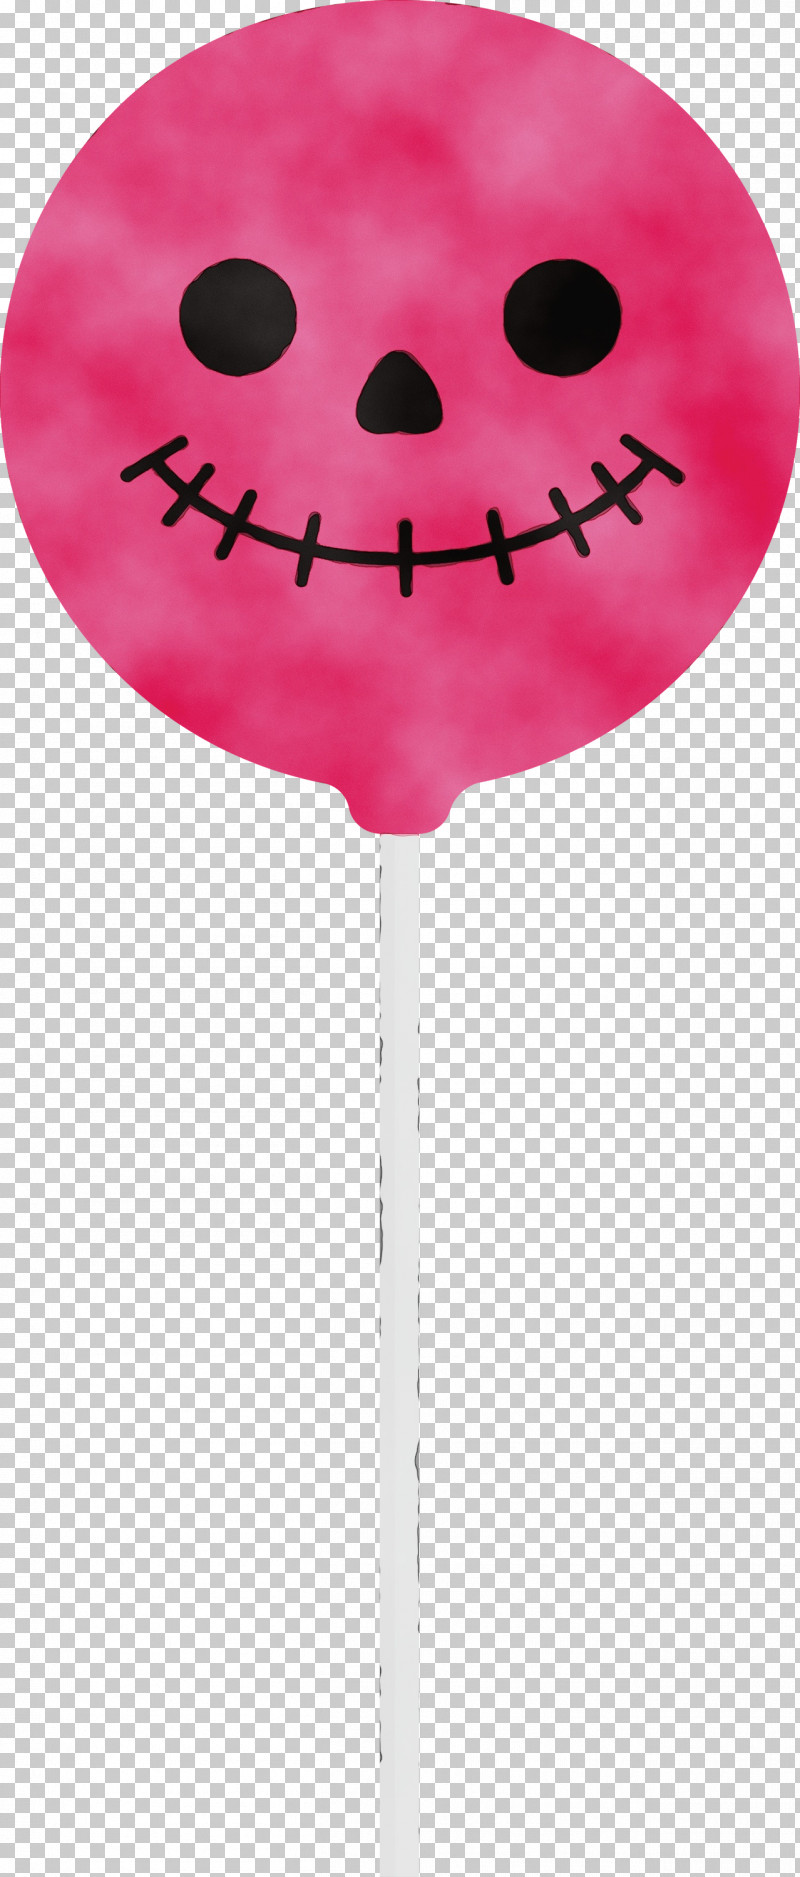 Lollipop Balloon Flower Heart M-095 PNG, Clipart, Balloon, Flower, Halloween, Heart, Lollipop Free PNG Download